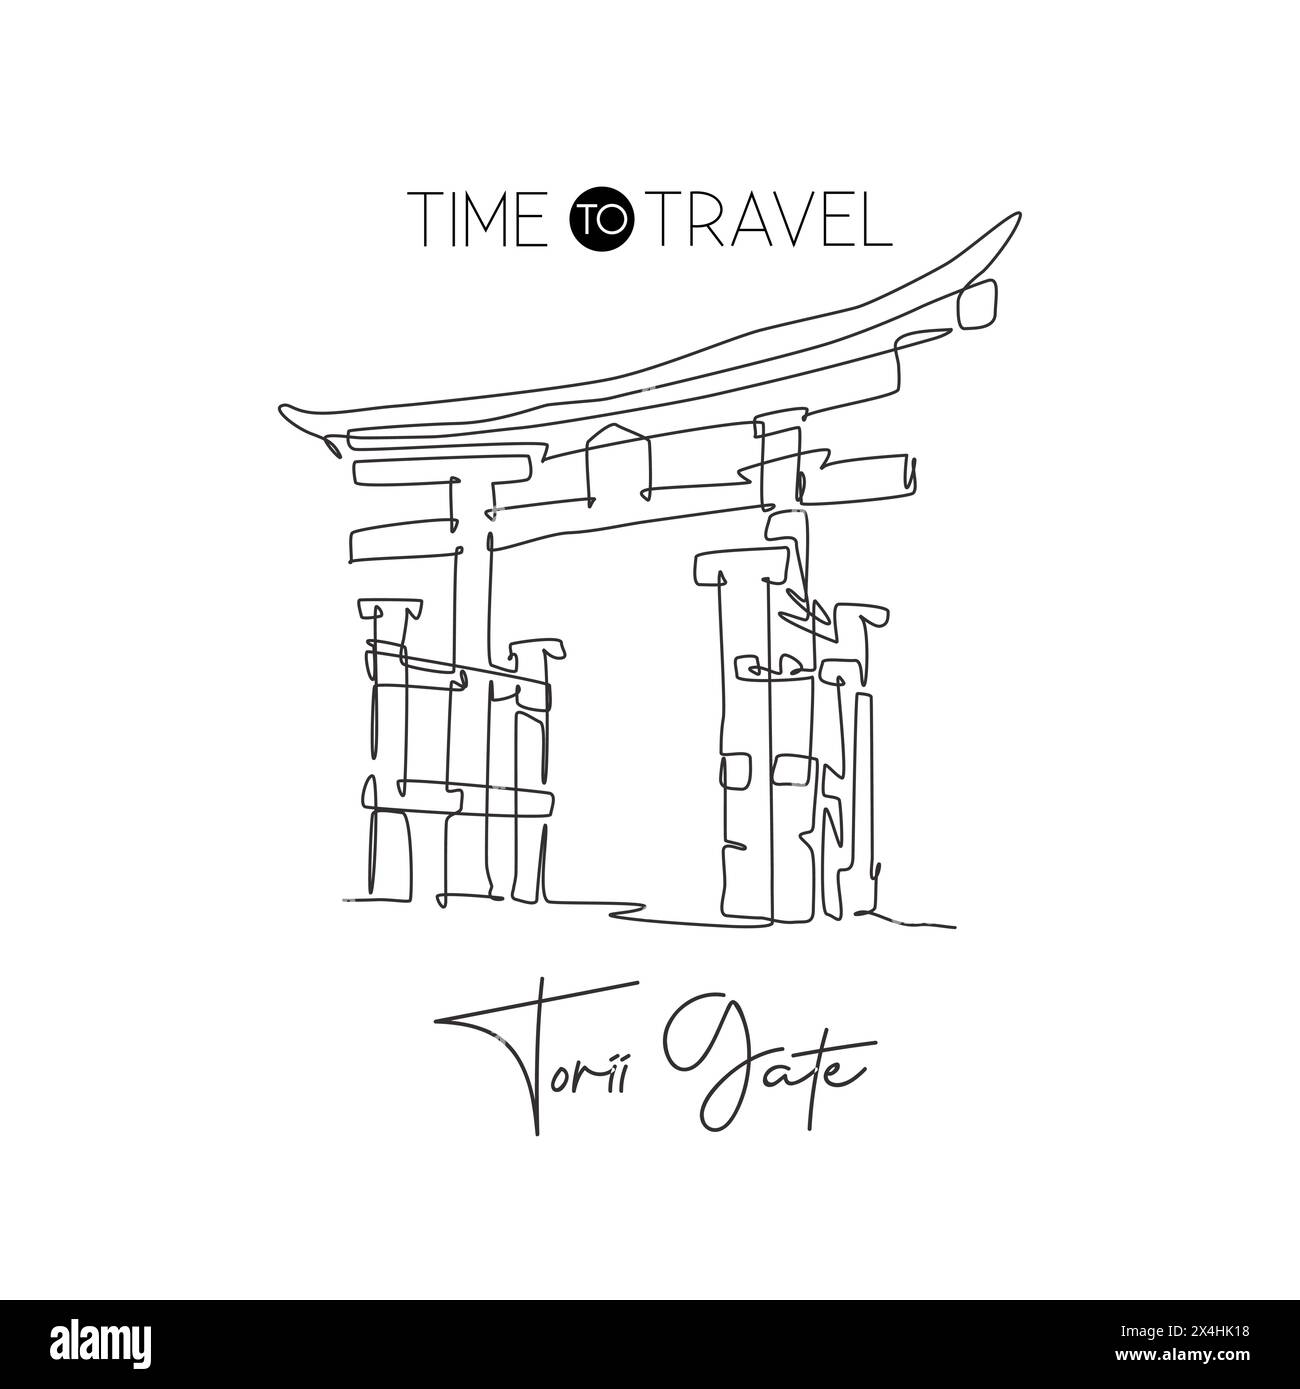 Eine einzelne Linie, die das Wahrzeichen des Torii-Tors zeichnet. Weltberühmte Wahrzeichen der japanischen Kultur. Tourismusreise Postkarte Wanddekor Posterdruck Konzept. Modus Stock Vektor